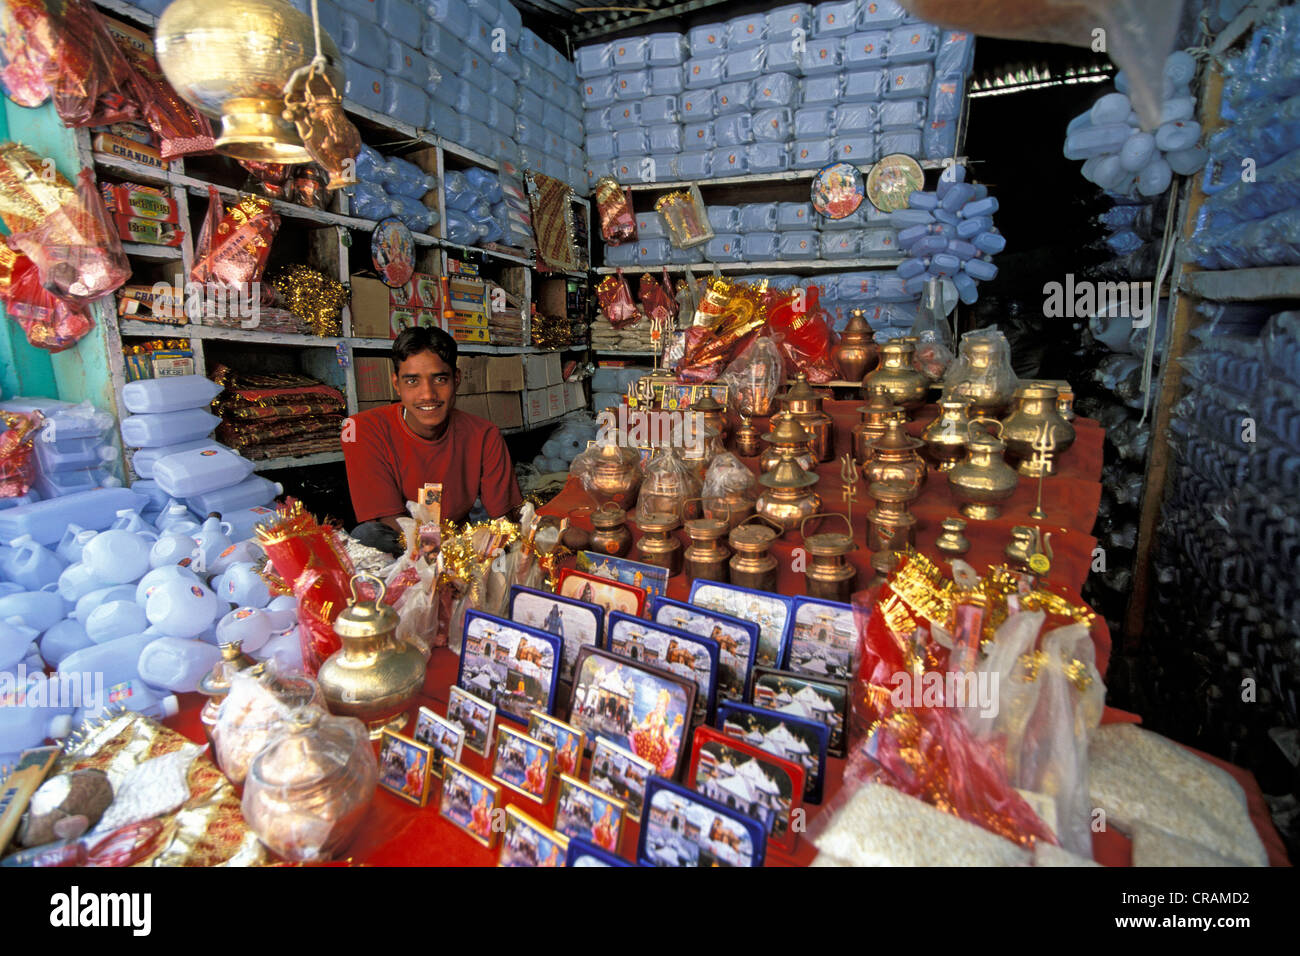 Vente d'objets de dévotion marchand, Gangotri, Himalaya indien, Uttarakhand, anciennement l'Uttaranchal, Inde, Asie Banque D'Images